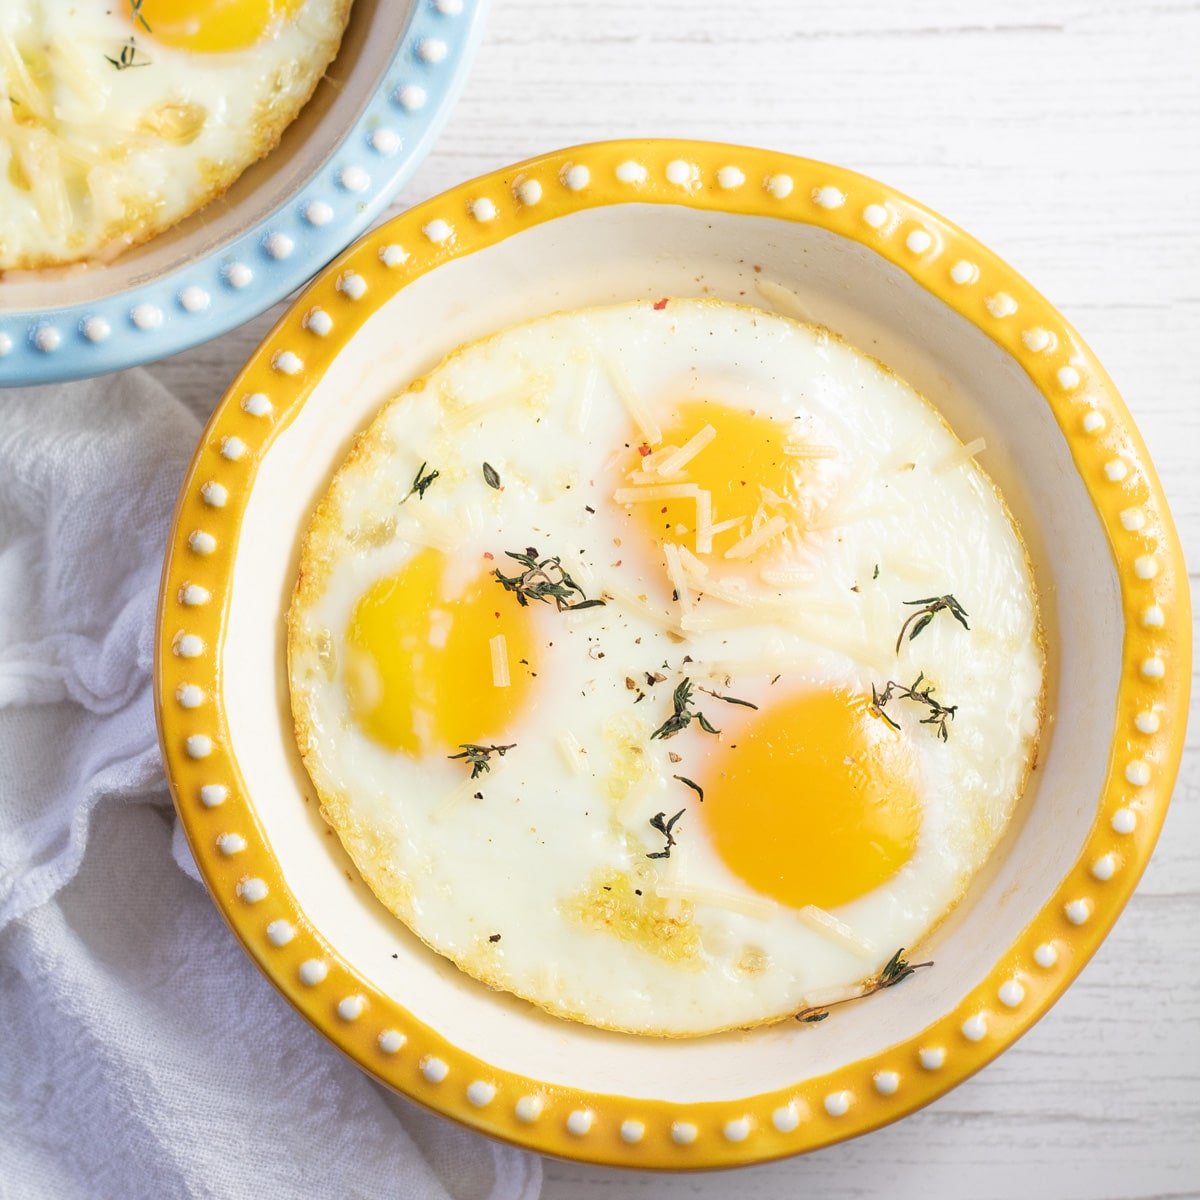 Najbolja pečena jaja za bilo koji doručak prikazan u plitkoj posudi za pečenje.